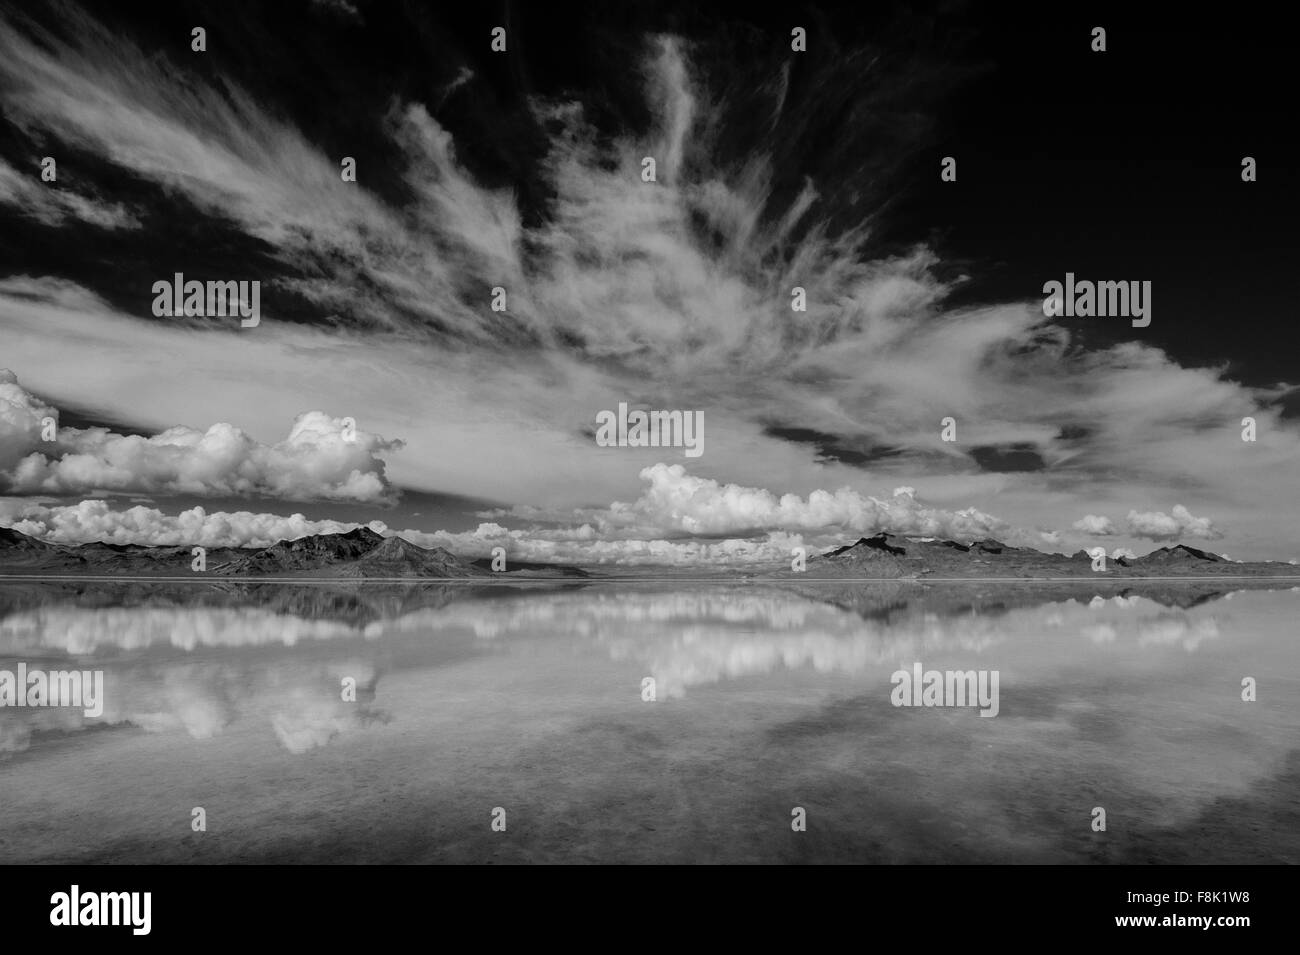 La réflexion extérieure de l'horizon au-dessus de l'eau, montagnes et nuages, noir et blanc, Bonneville, Utah, USA Banque D'Images